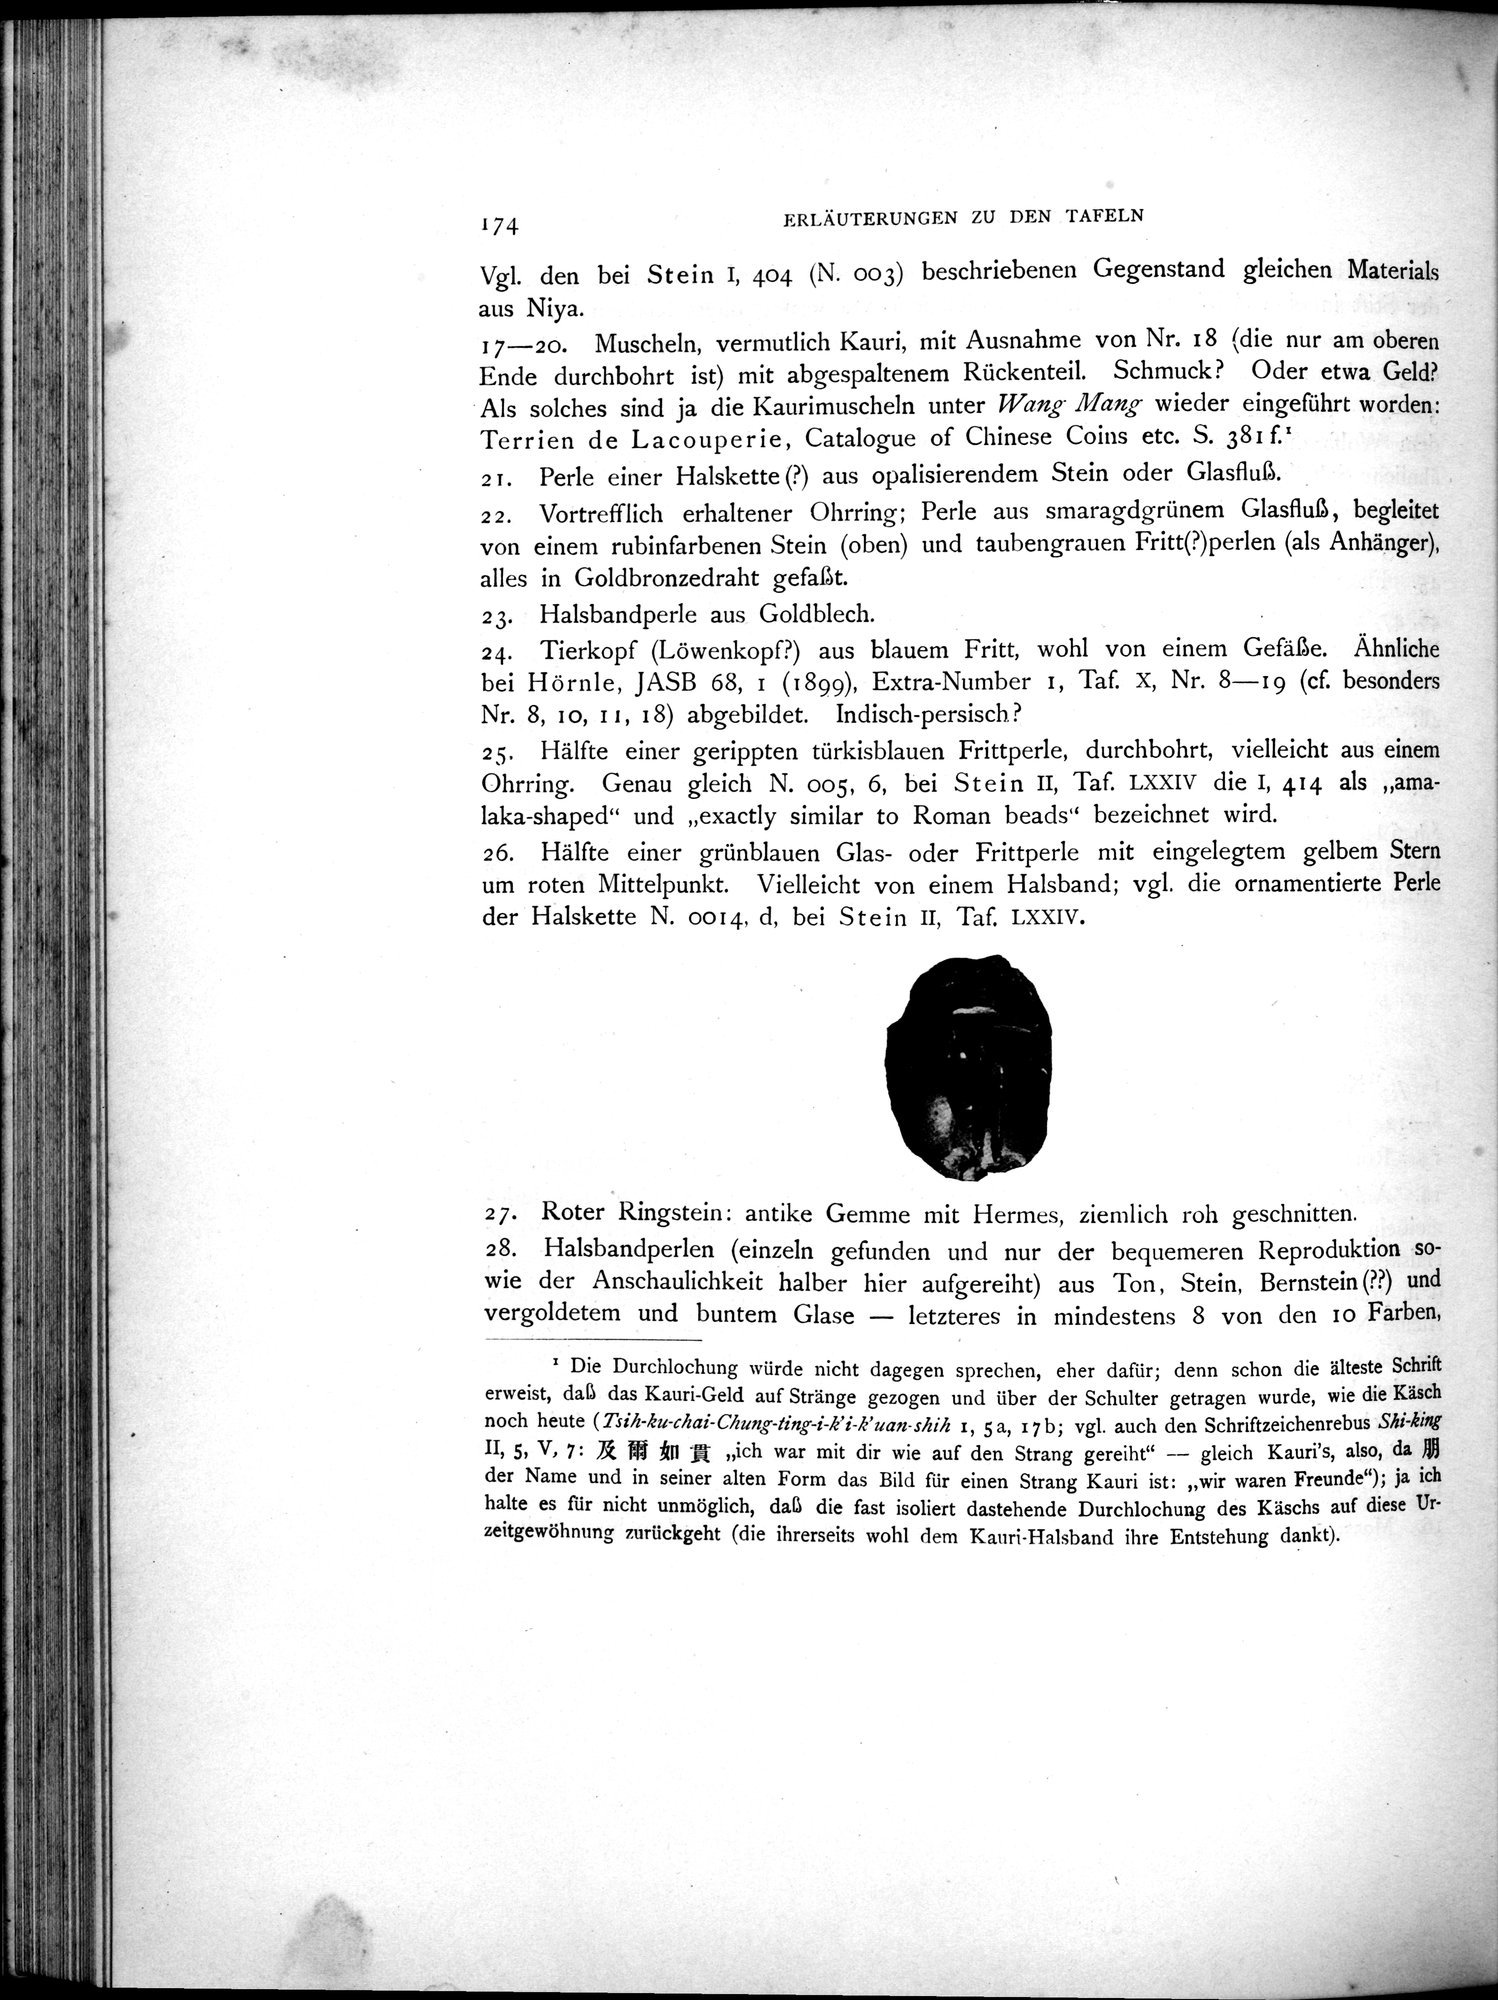 Die Chinesischen Handschriften- und sonstigen Kleinfunde Sven Hedins in Lou-lan : vol.1 / Page 198 (Grayscale High Resolution Image)